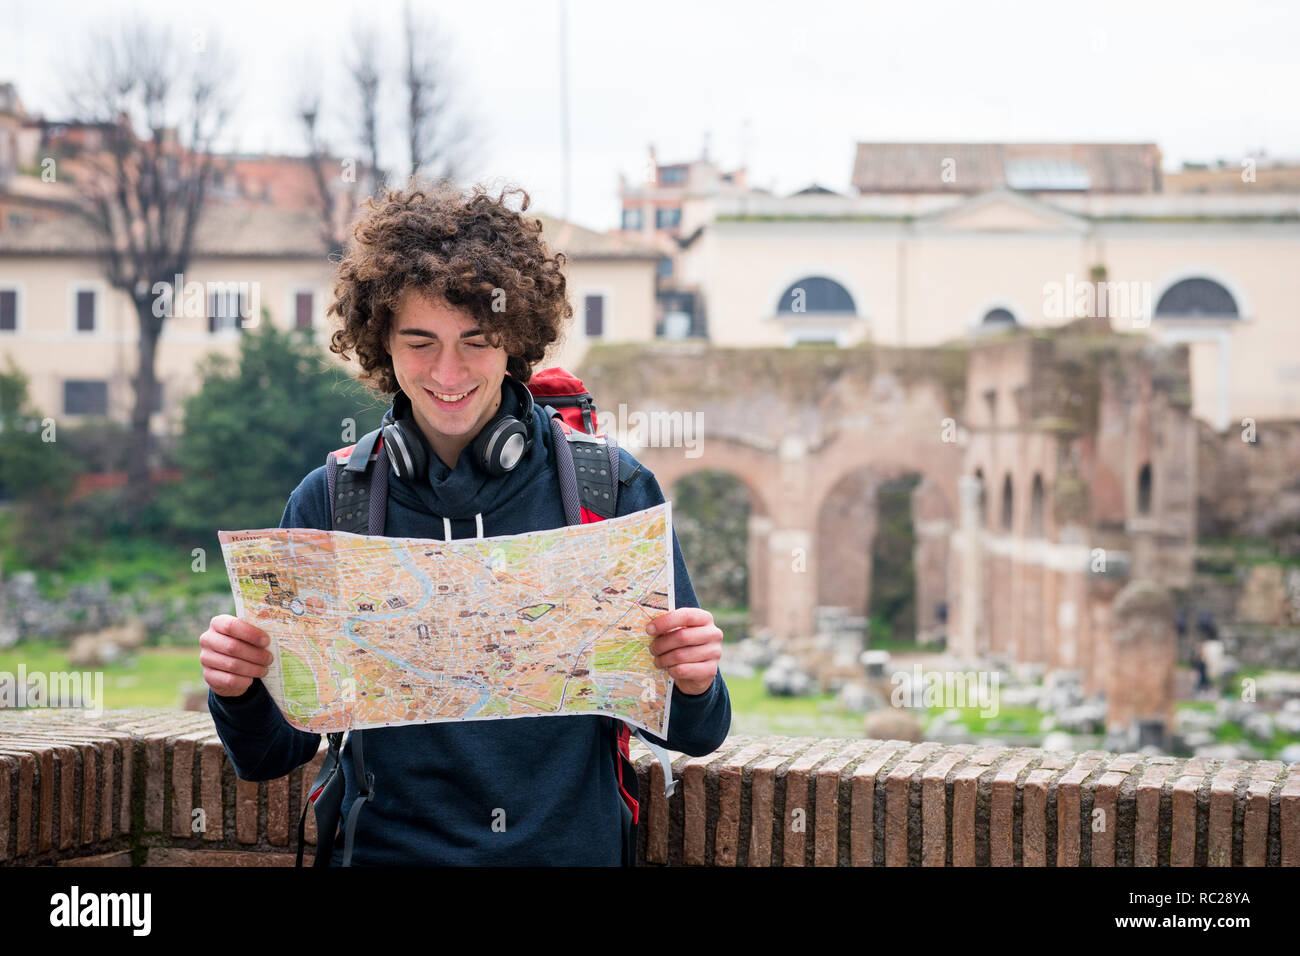 Attraktive touristische an touristische Karte in der Nähe von Forum Romanum in Rom, Italien. Stockfoto